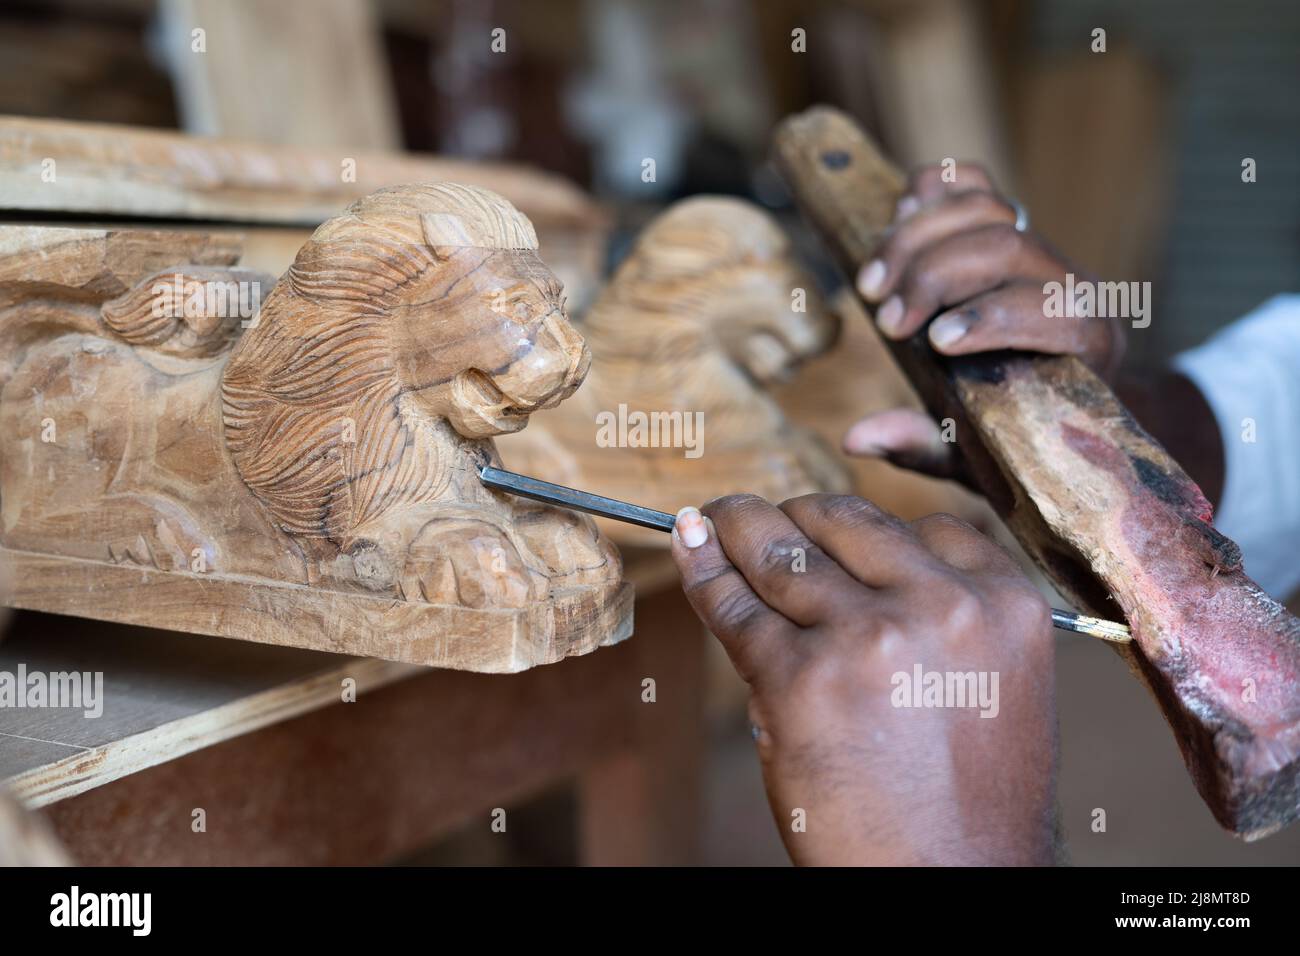 gros plan des mains charpentiers occupé à faire la conception ou la mise en forme du bois en utilisant des outils de menuiserie à la boutique - concept de la créativité, main d'œuvre qualifiée et du bois Banque D'Images